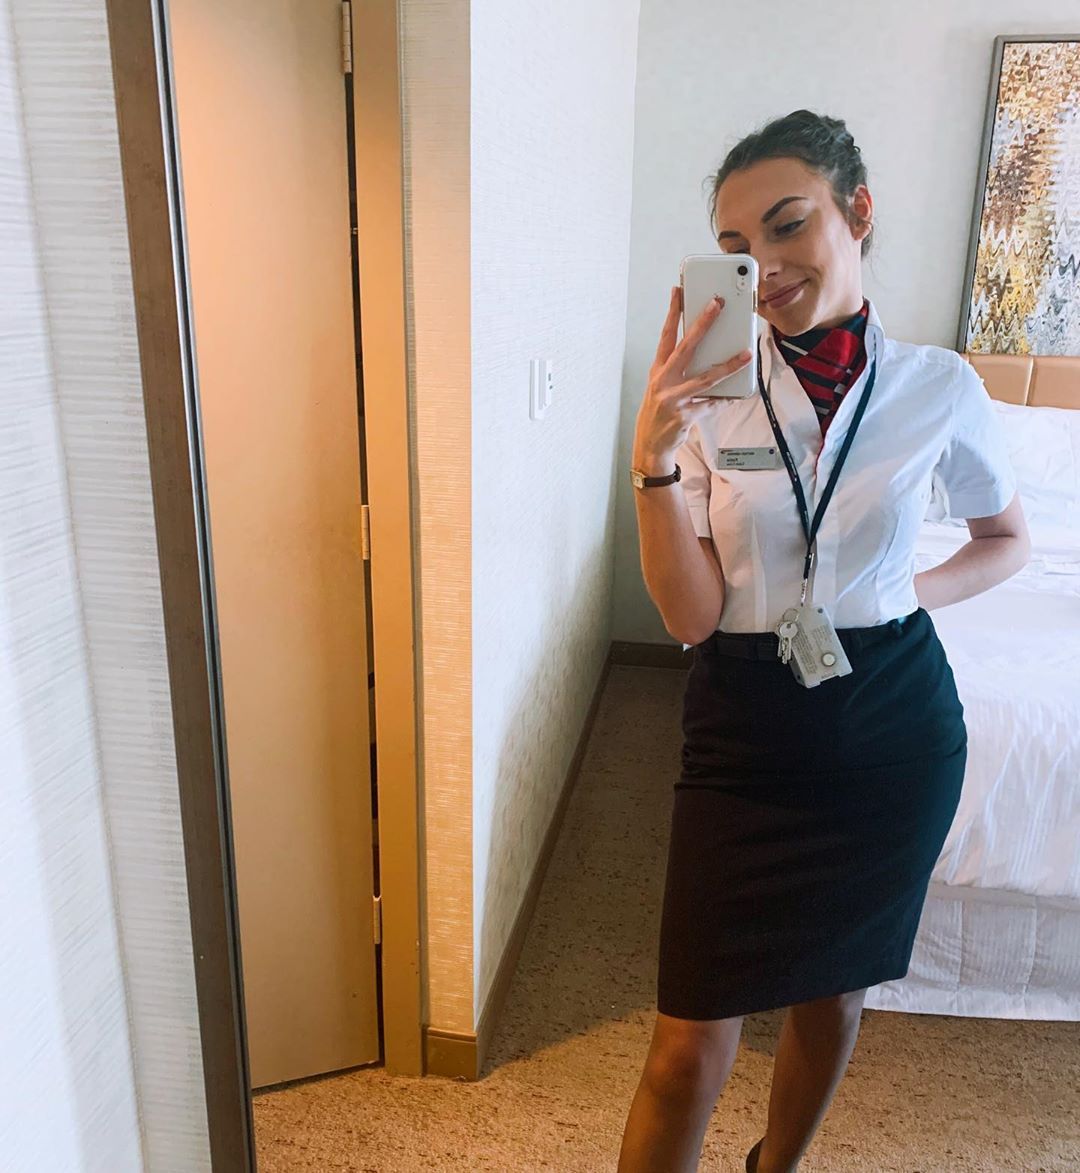 Flight attendant taking a selfie